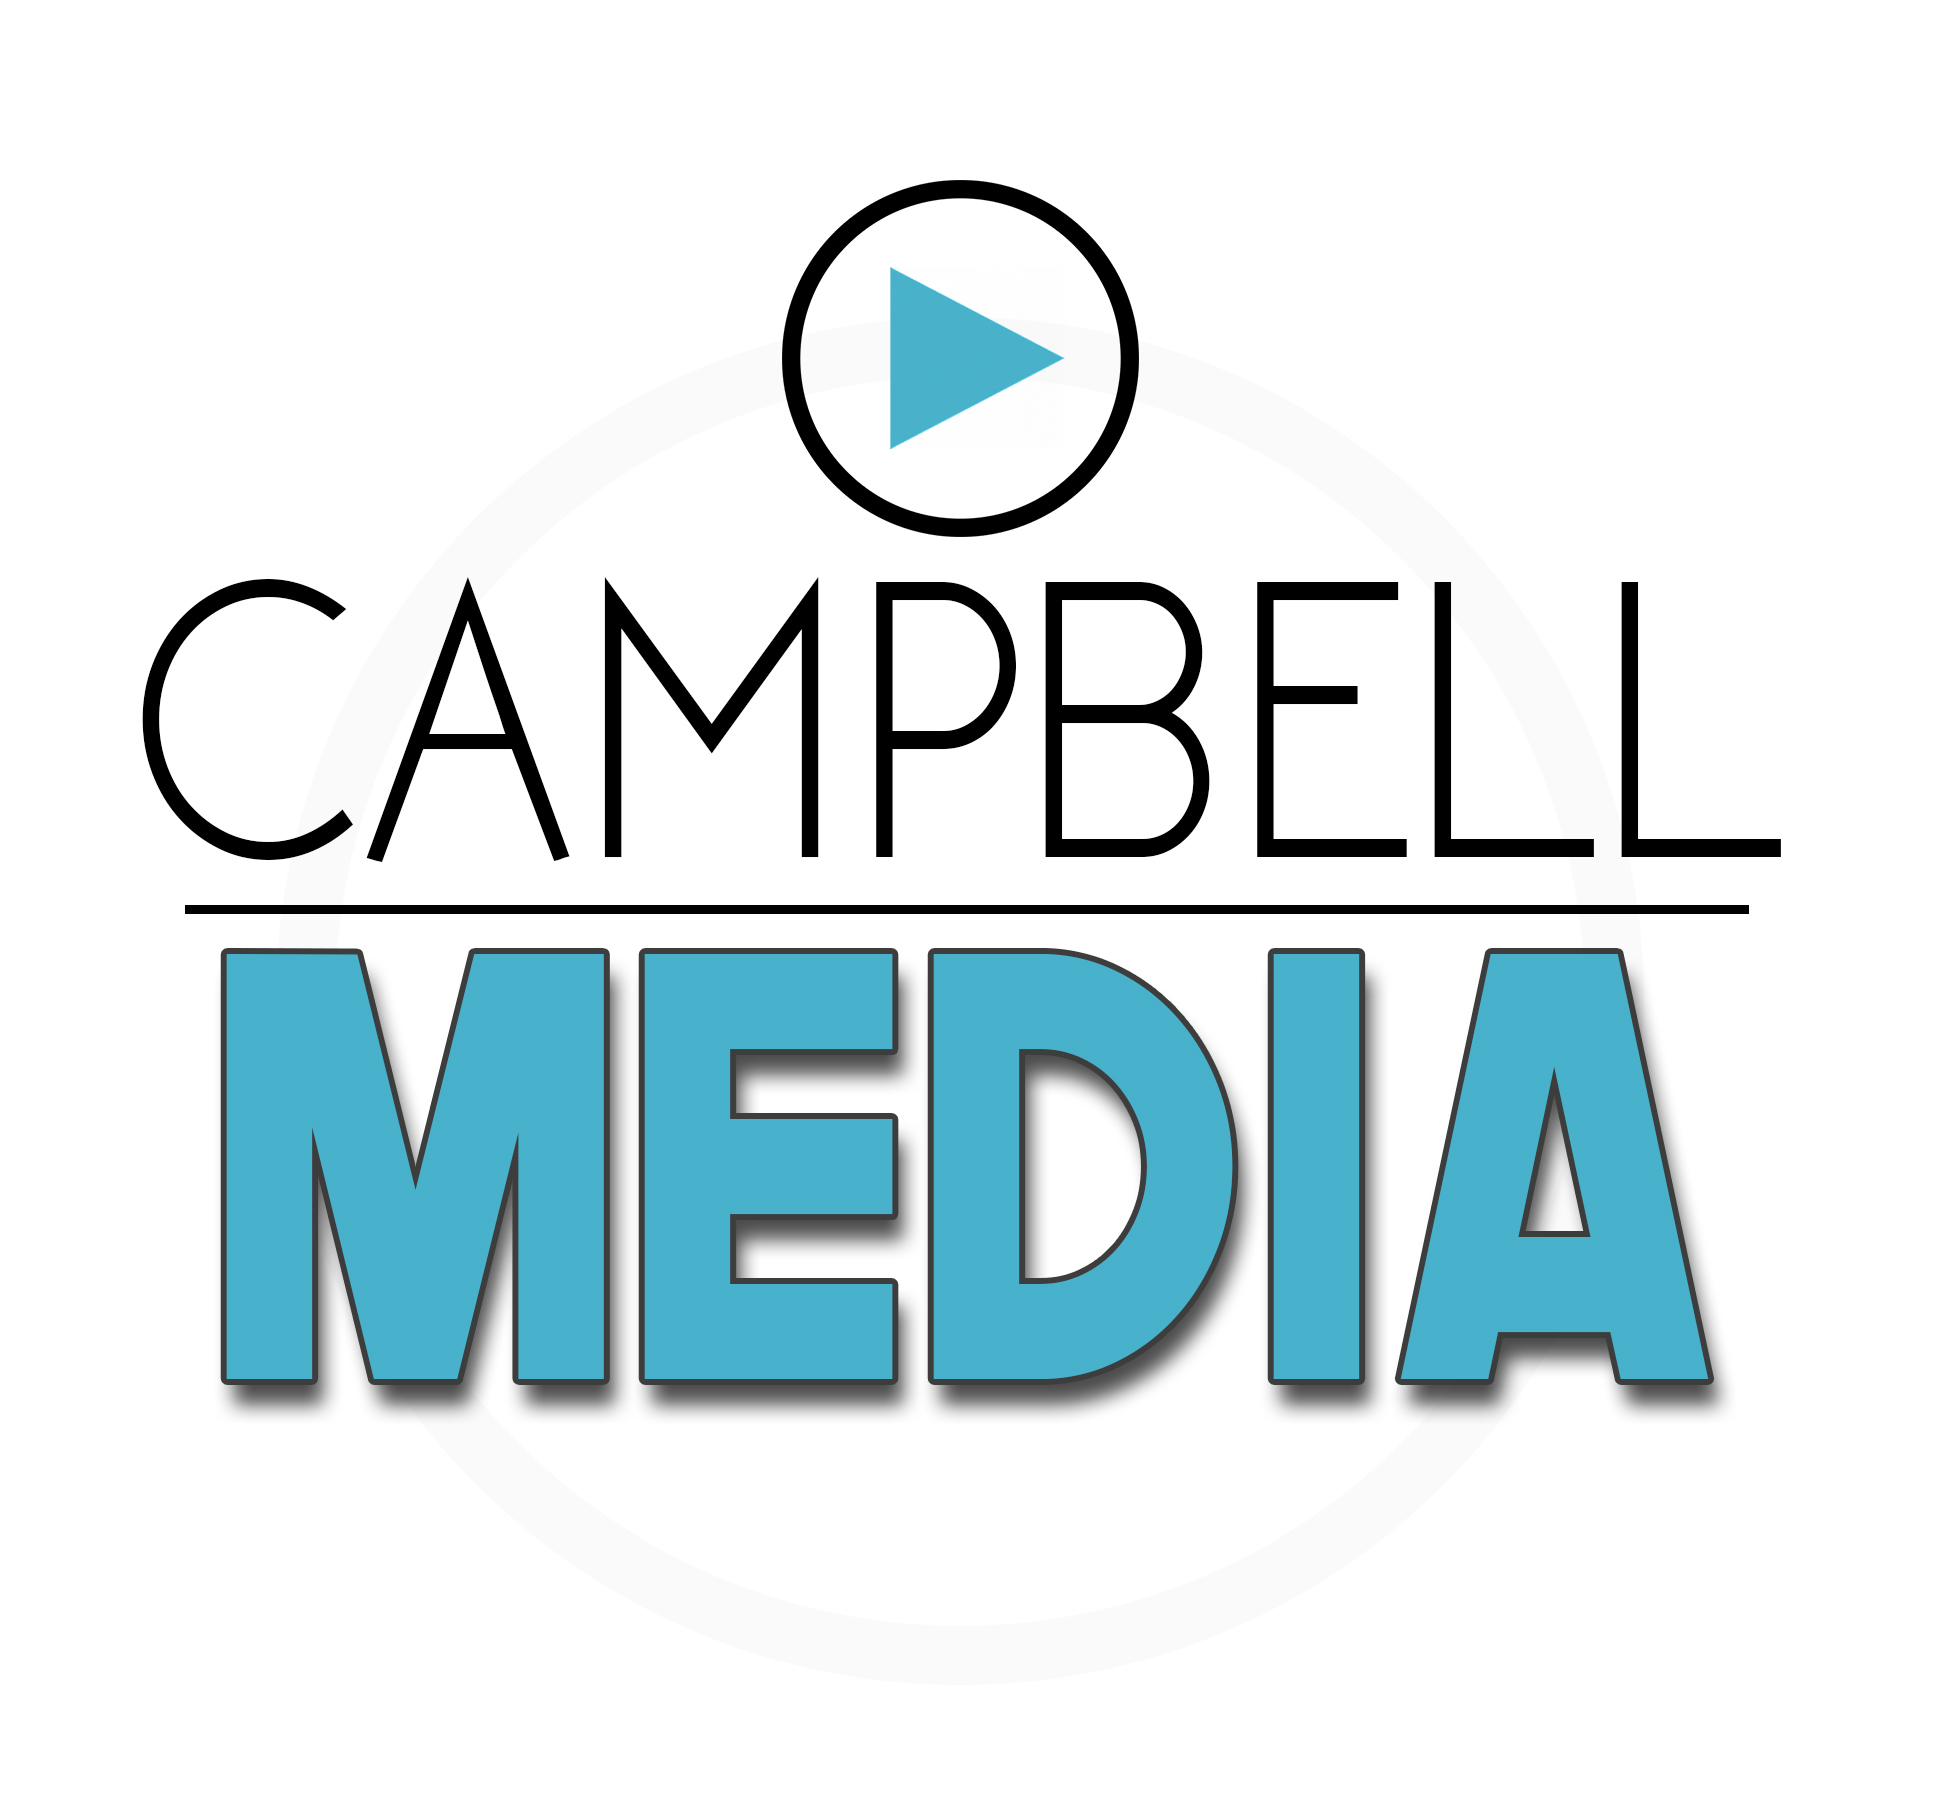 Campbell Media